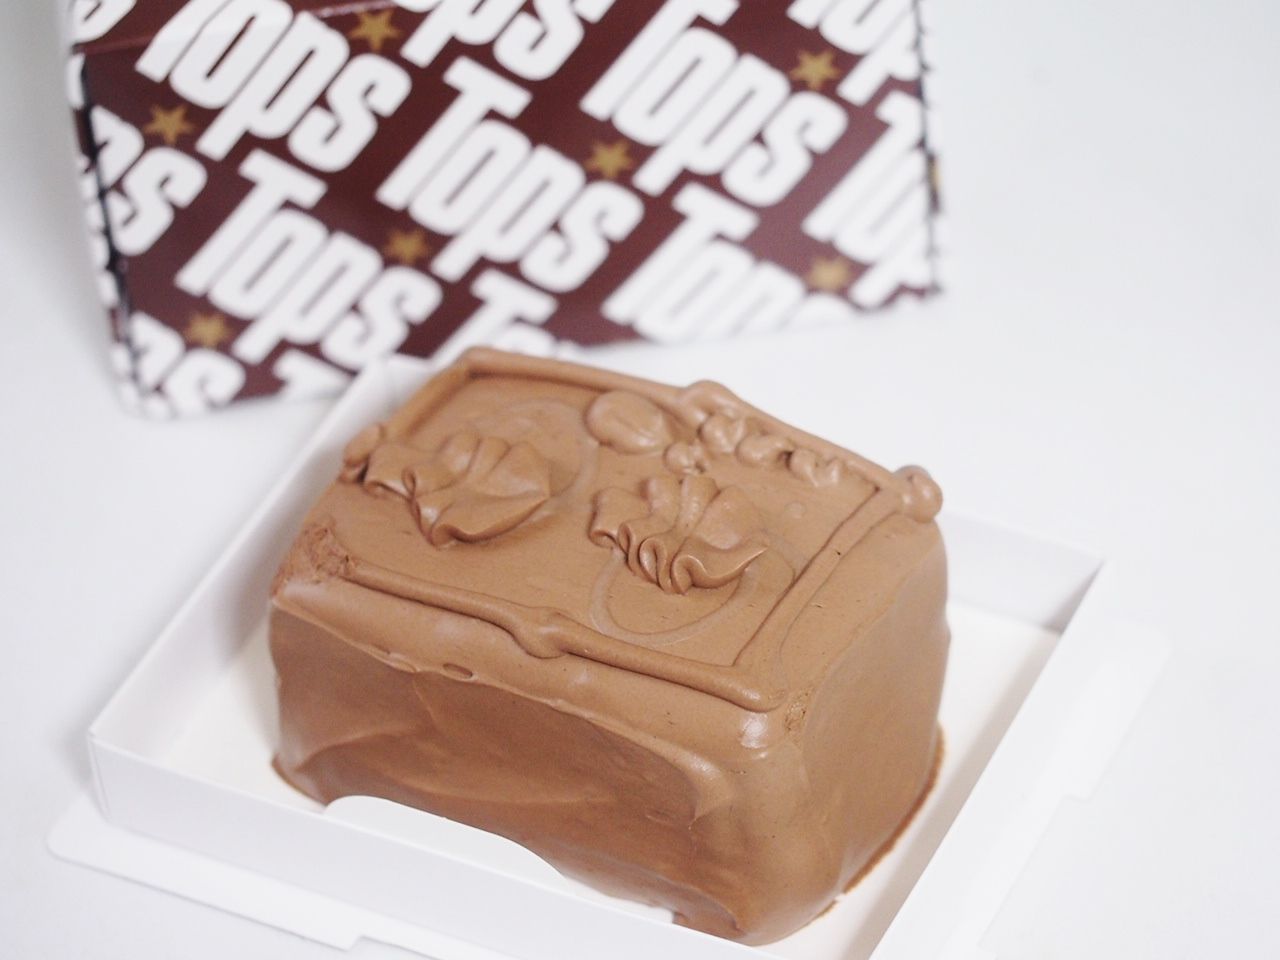 関西でも買えるトップス Top S のチョコレートケーキを堪能 スイーツハンター月ウサギの食べ日記 Powered By ライブドアブログ